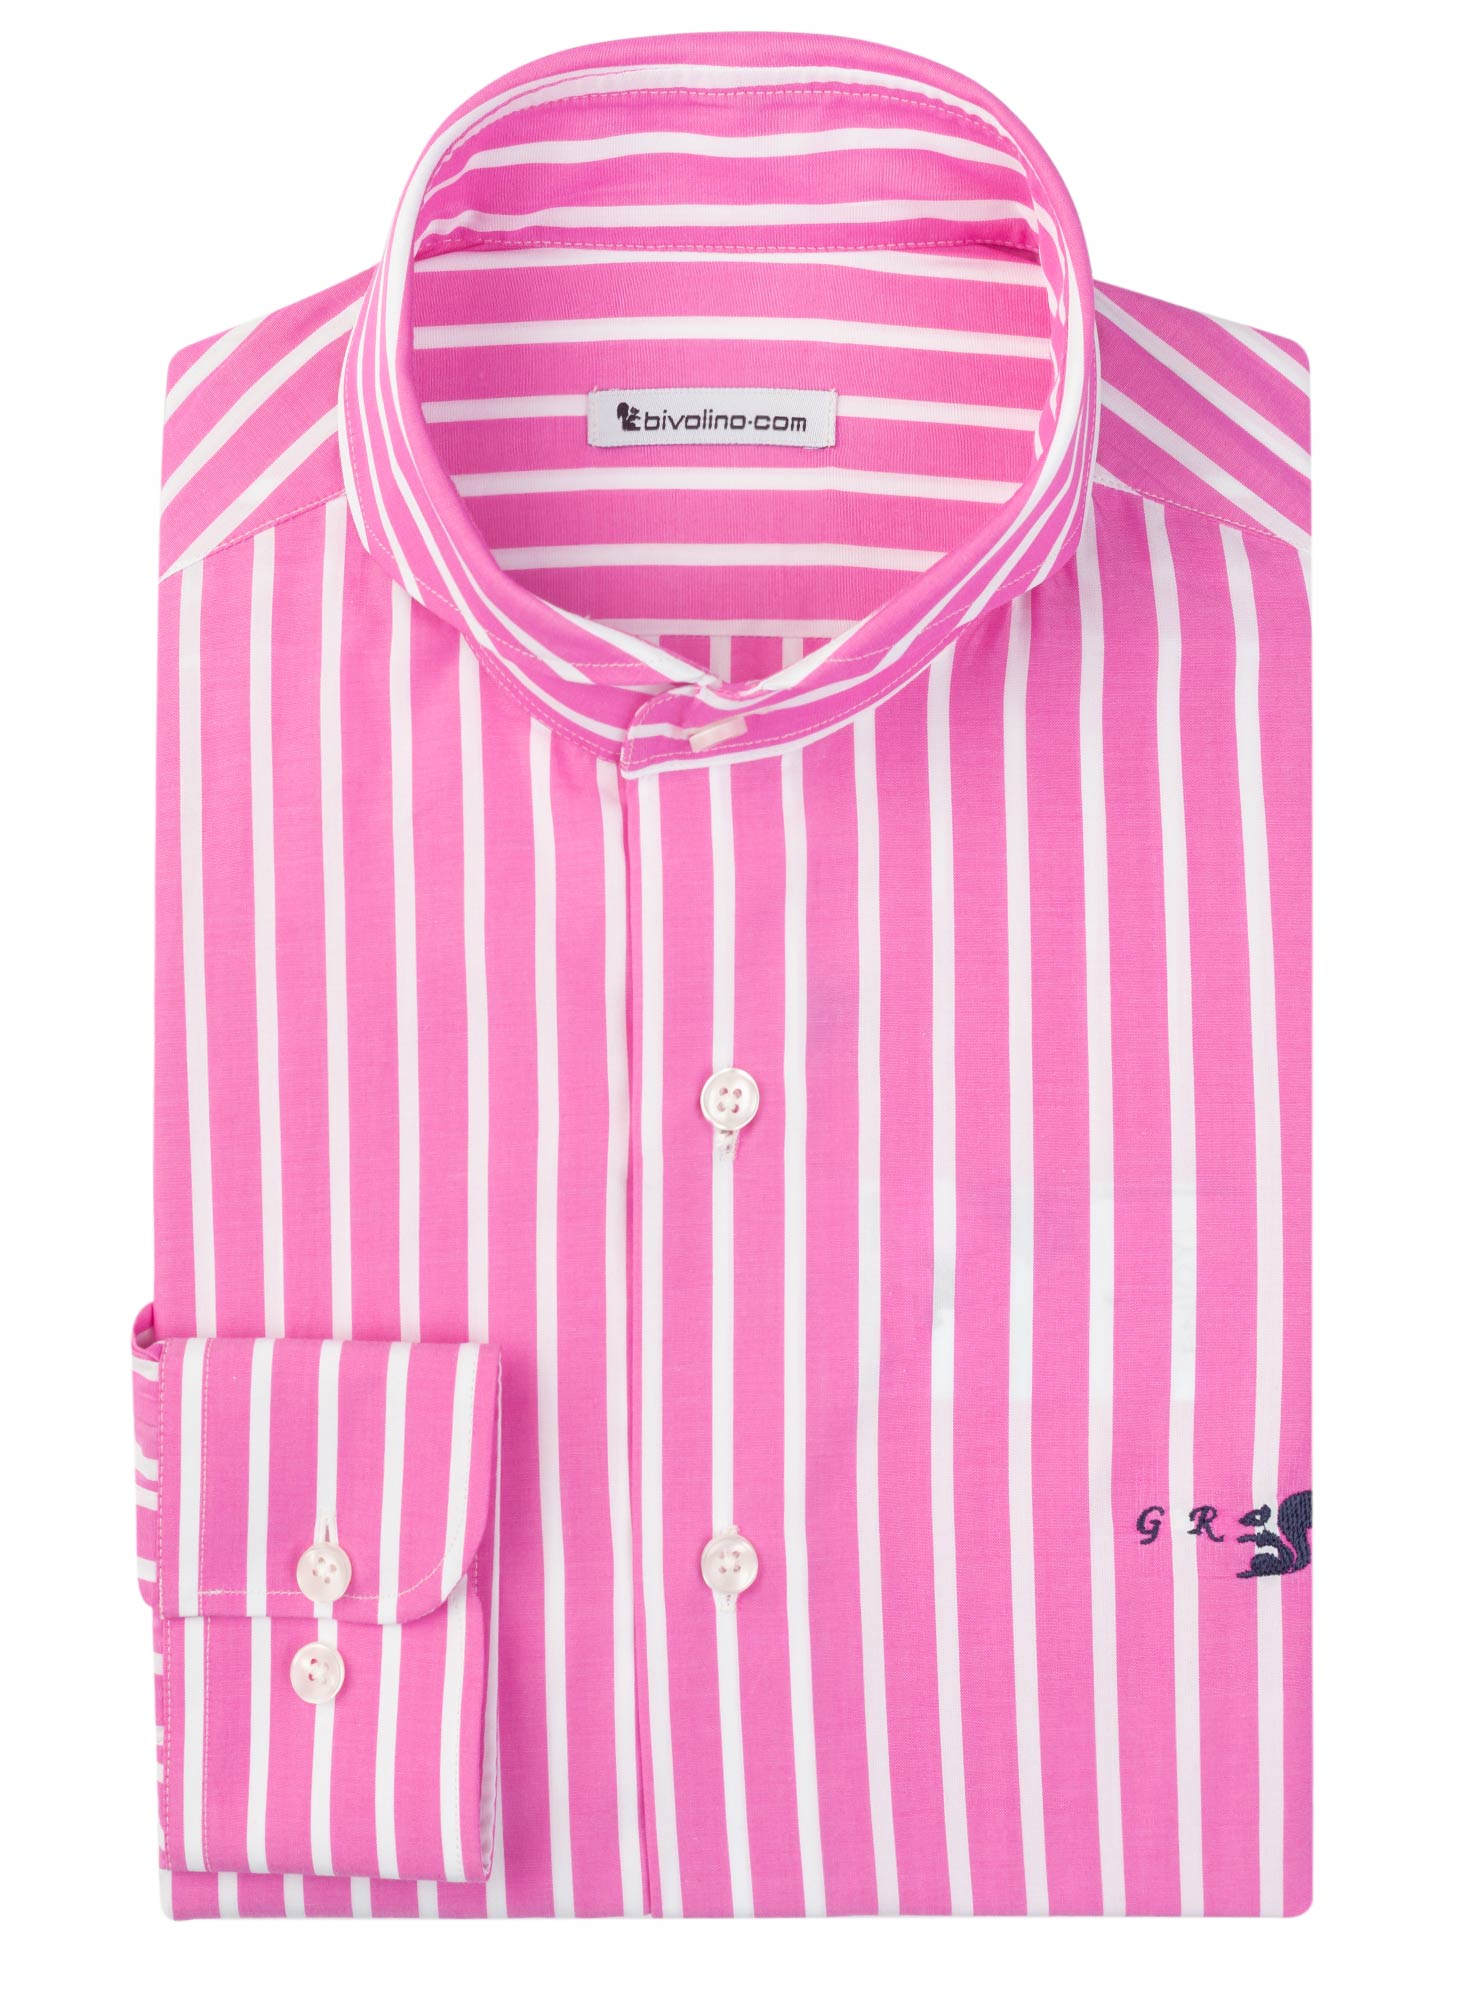 PESCARA - Gestreepte Popeline roze heren overhemd op maat - Trex 1